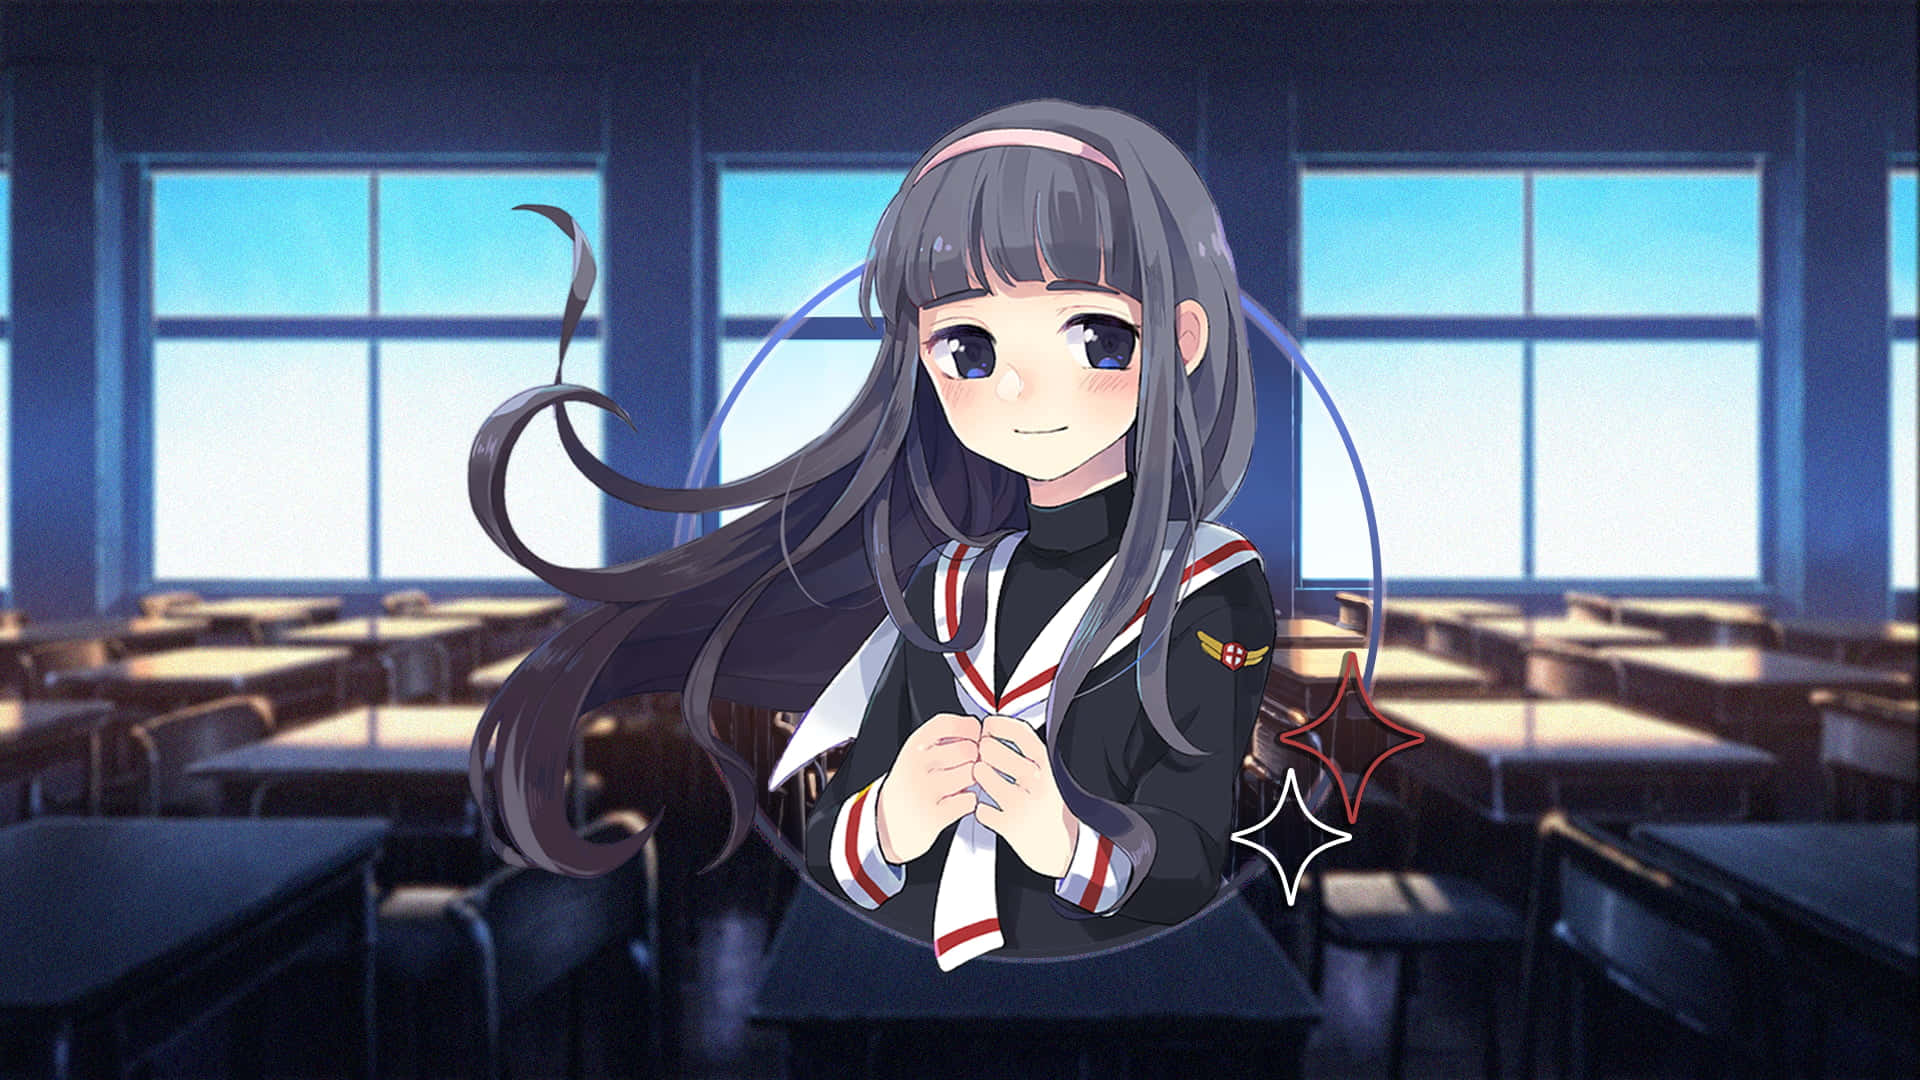 Anime girls, long hair, camera, Daidouji Tomoyo, school uniform